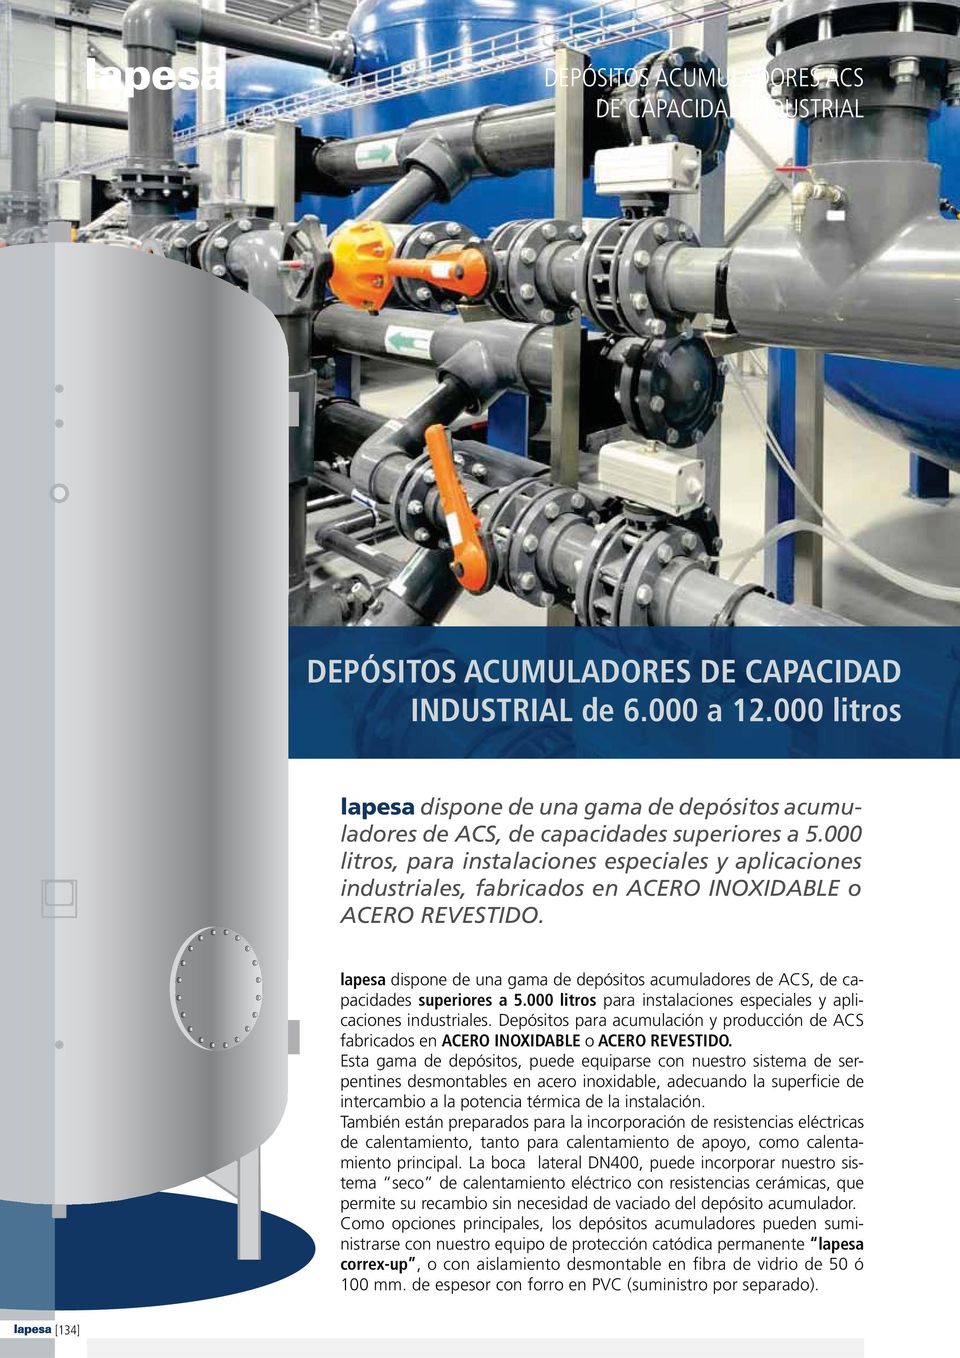 lapesa dispone de una gama de depósitos acumuladores de ACS, de capacidades superiores a 5.000 litros para instalaciones especiales y aplicaciones industriales.